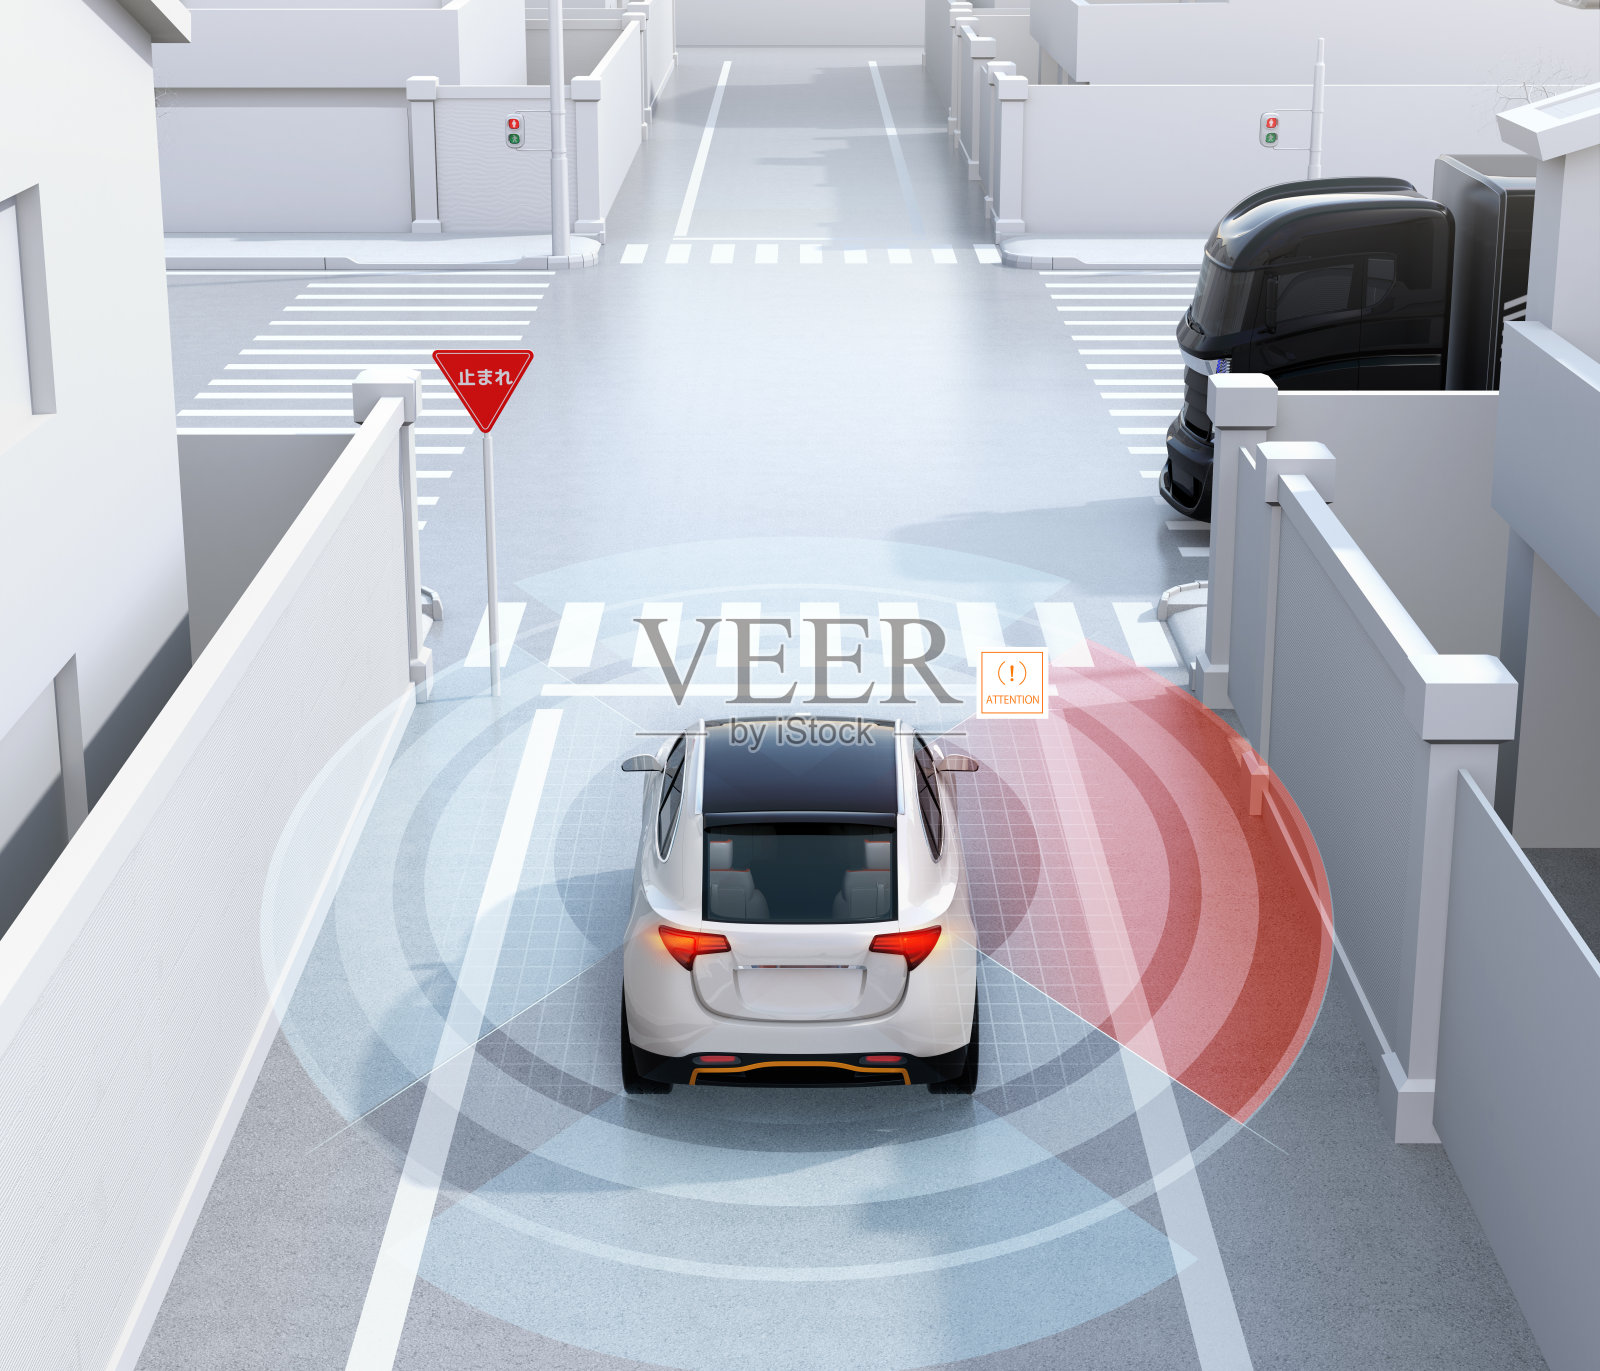 单行道白色SUV后视图检测到盲点车辆。日语的停车标志照片摄影图片